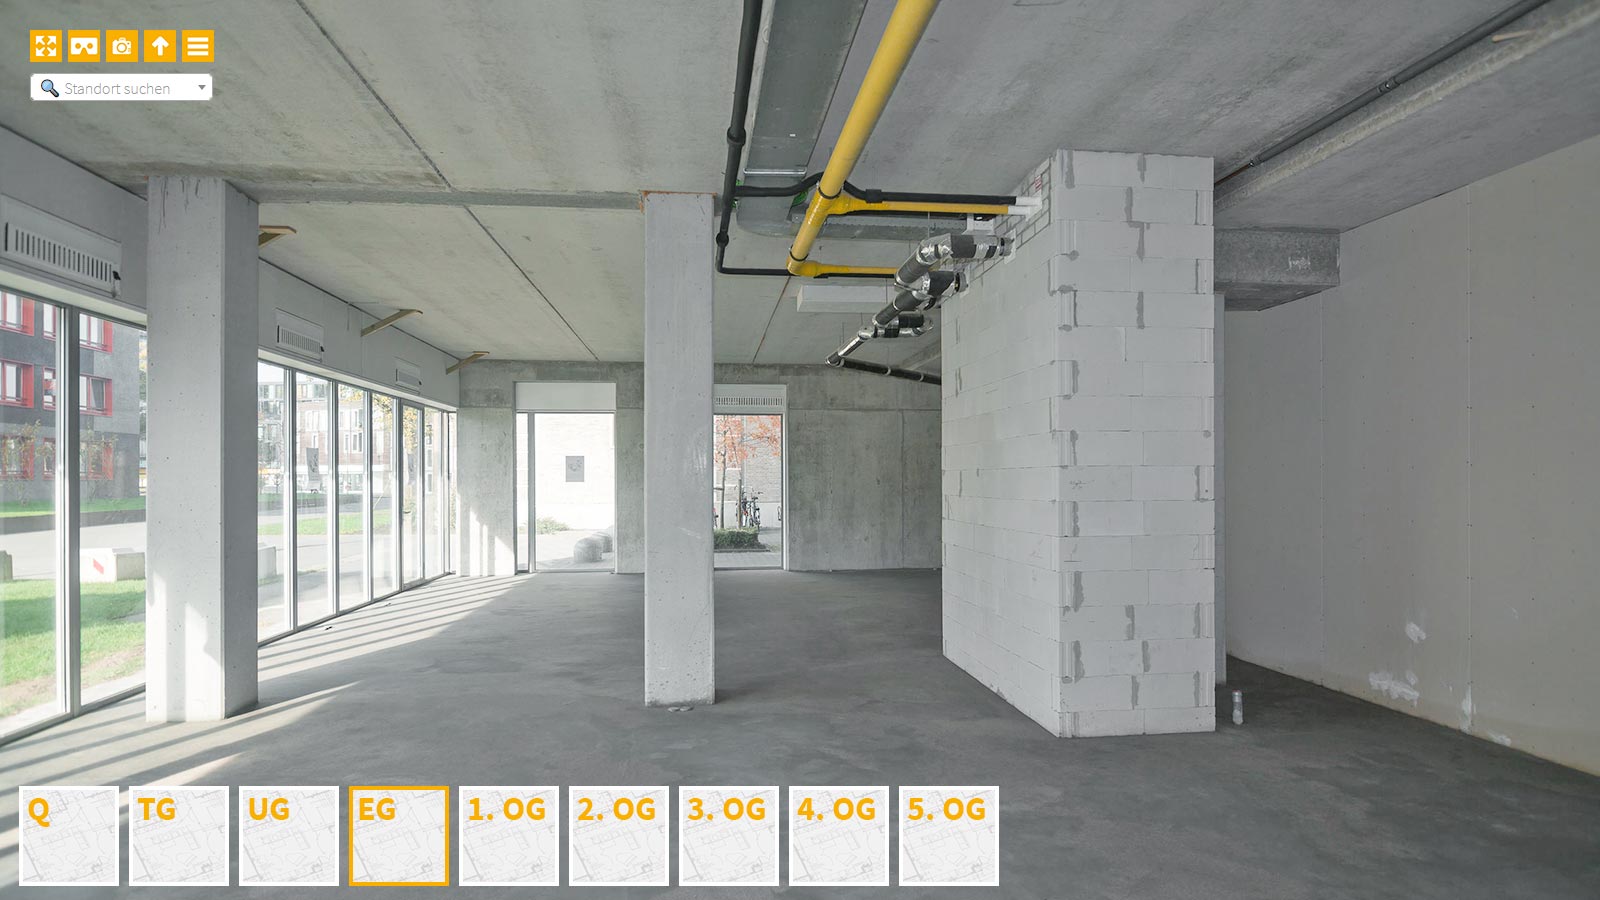 Baudokumentation 360 Grad bei gestörten Projekten in 


	


	


	


	


	


	


	


	


	


	Göttingen









, Bilddokumentation als virtueller Rundgang